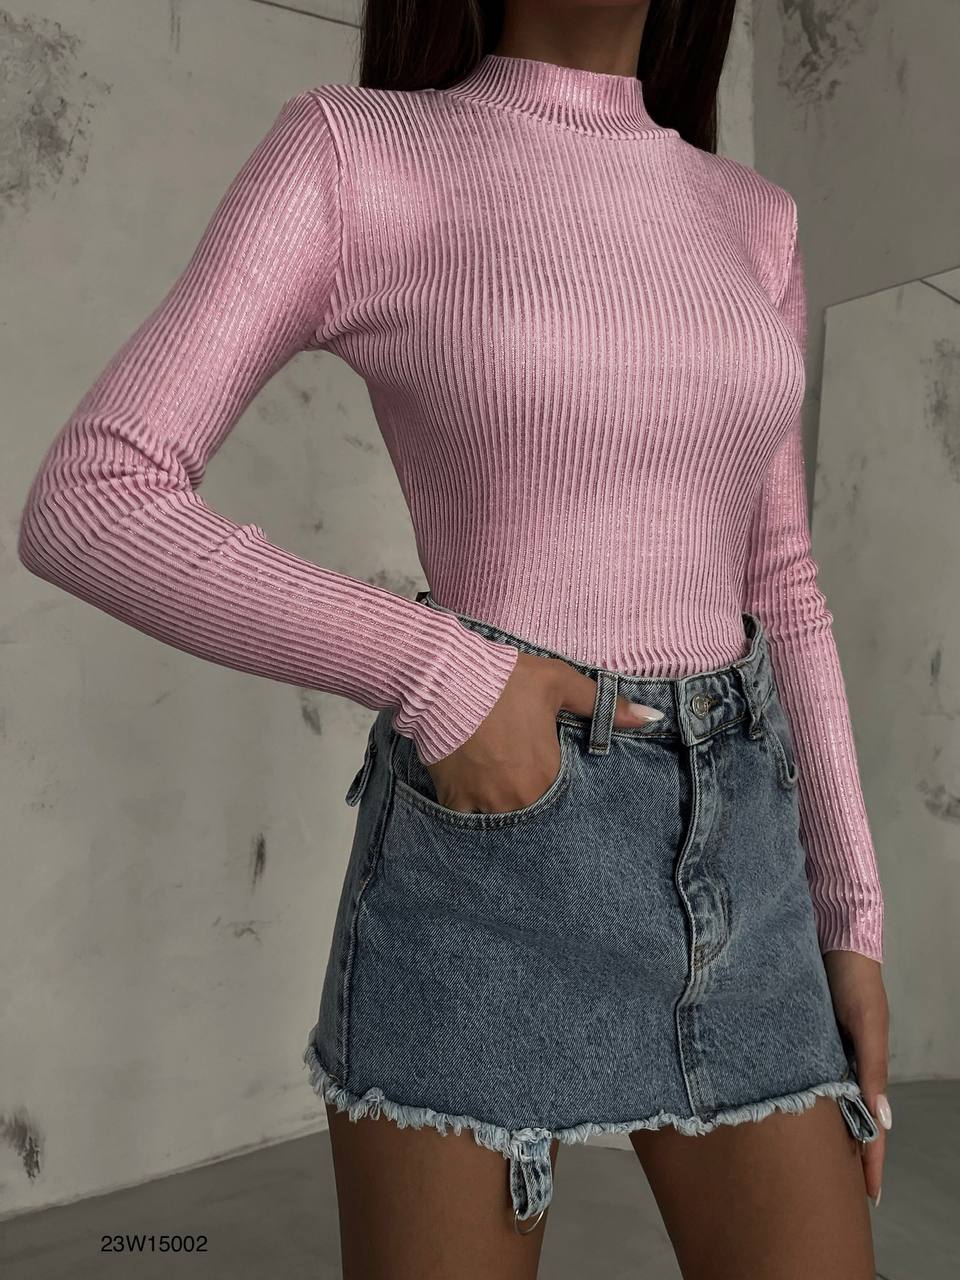 Дамска блуза Marie Pink  https://bvseductive.com/products/дамска-блуза-marie-pink  ефектна блуза в розов цвят втален модел, подчертаващ фигурата с дълъг ръкав и поло яка красиво предложение за Вашата визия